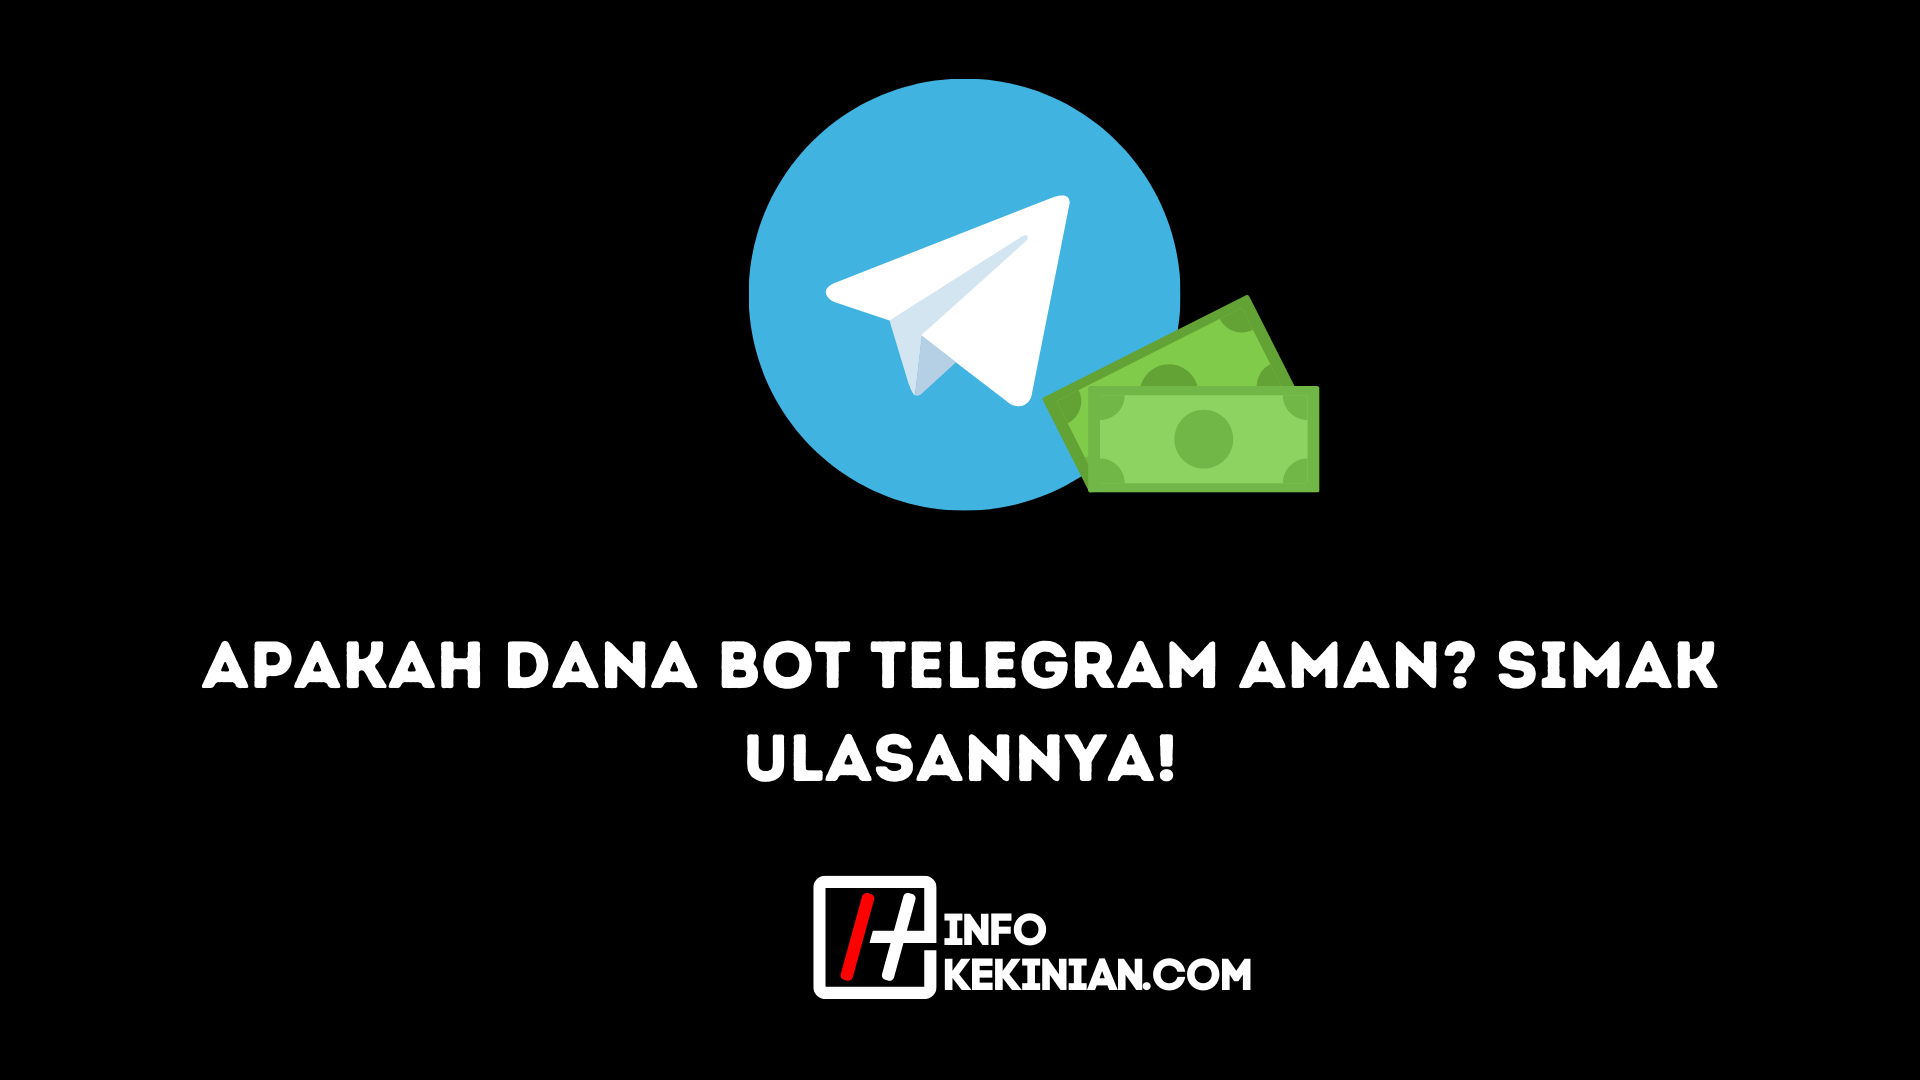 Apakah Dana Bot Telegram Aman Simak Ulasannya